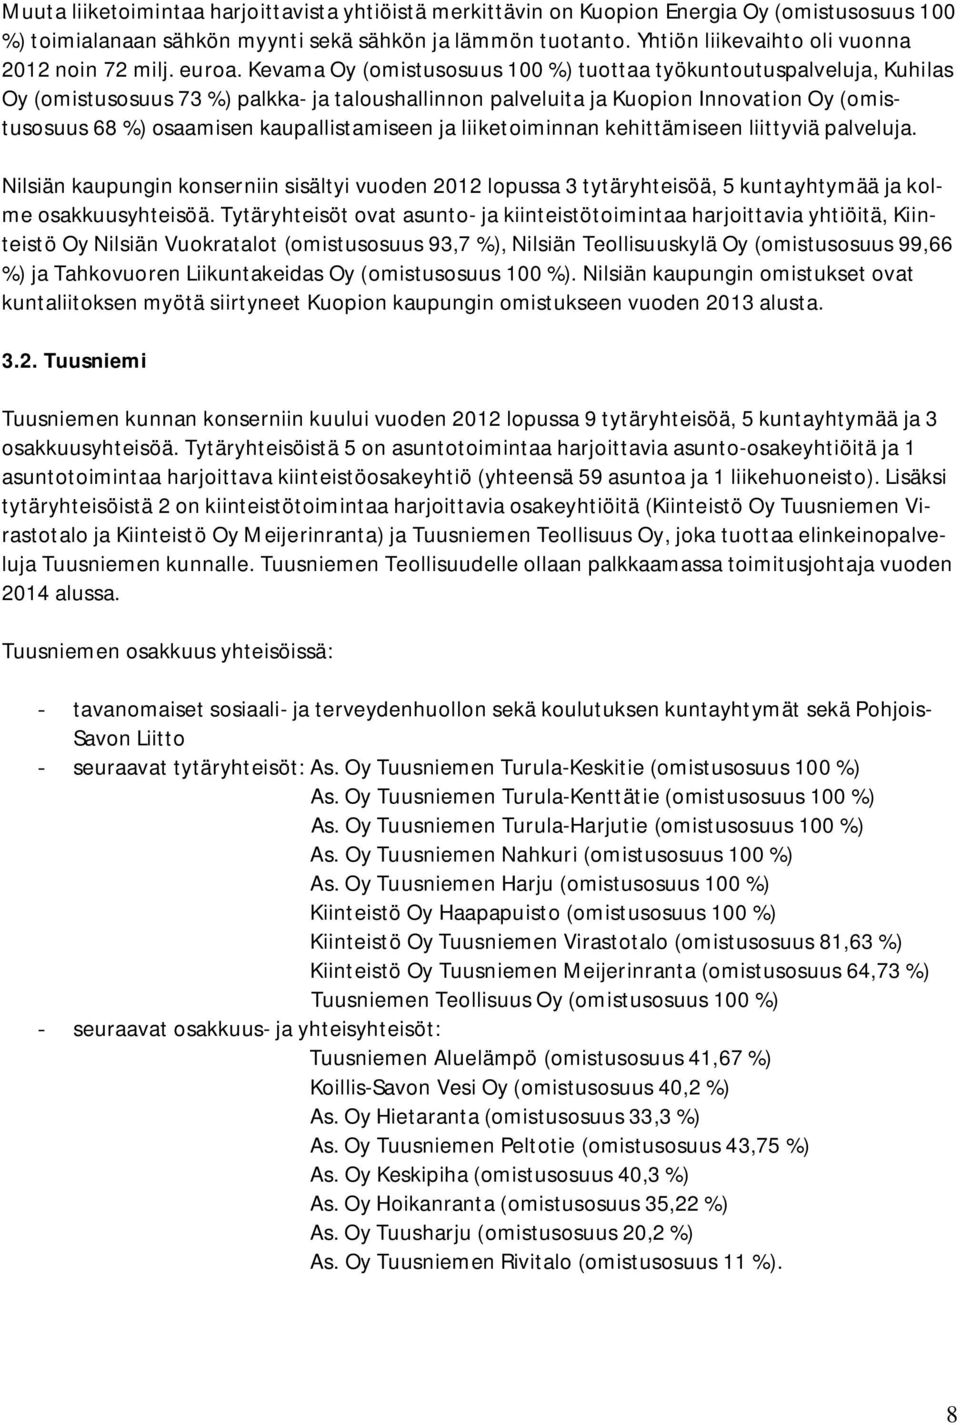 Kevama Oy (omistusosuus 100 %) tuottaa työkuntoutuspalveluja, Kuhilas Oy (omistusosuus 73 %) palkka- ja taloushallinnon palveluita ja Kuopion Innovation Oy (omistusosuus 68 %) osaamisen